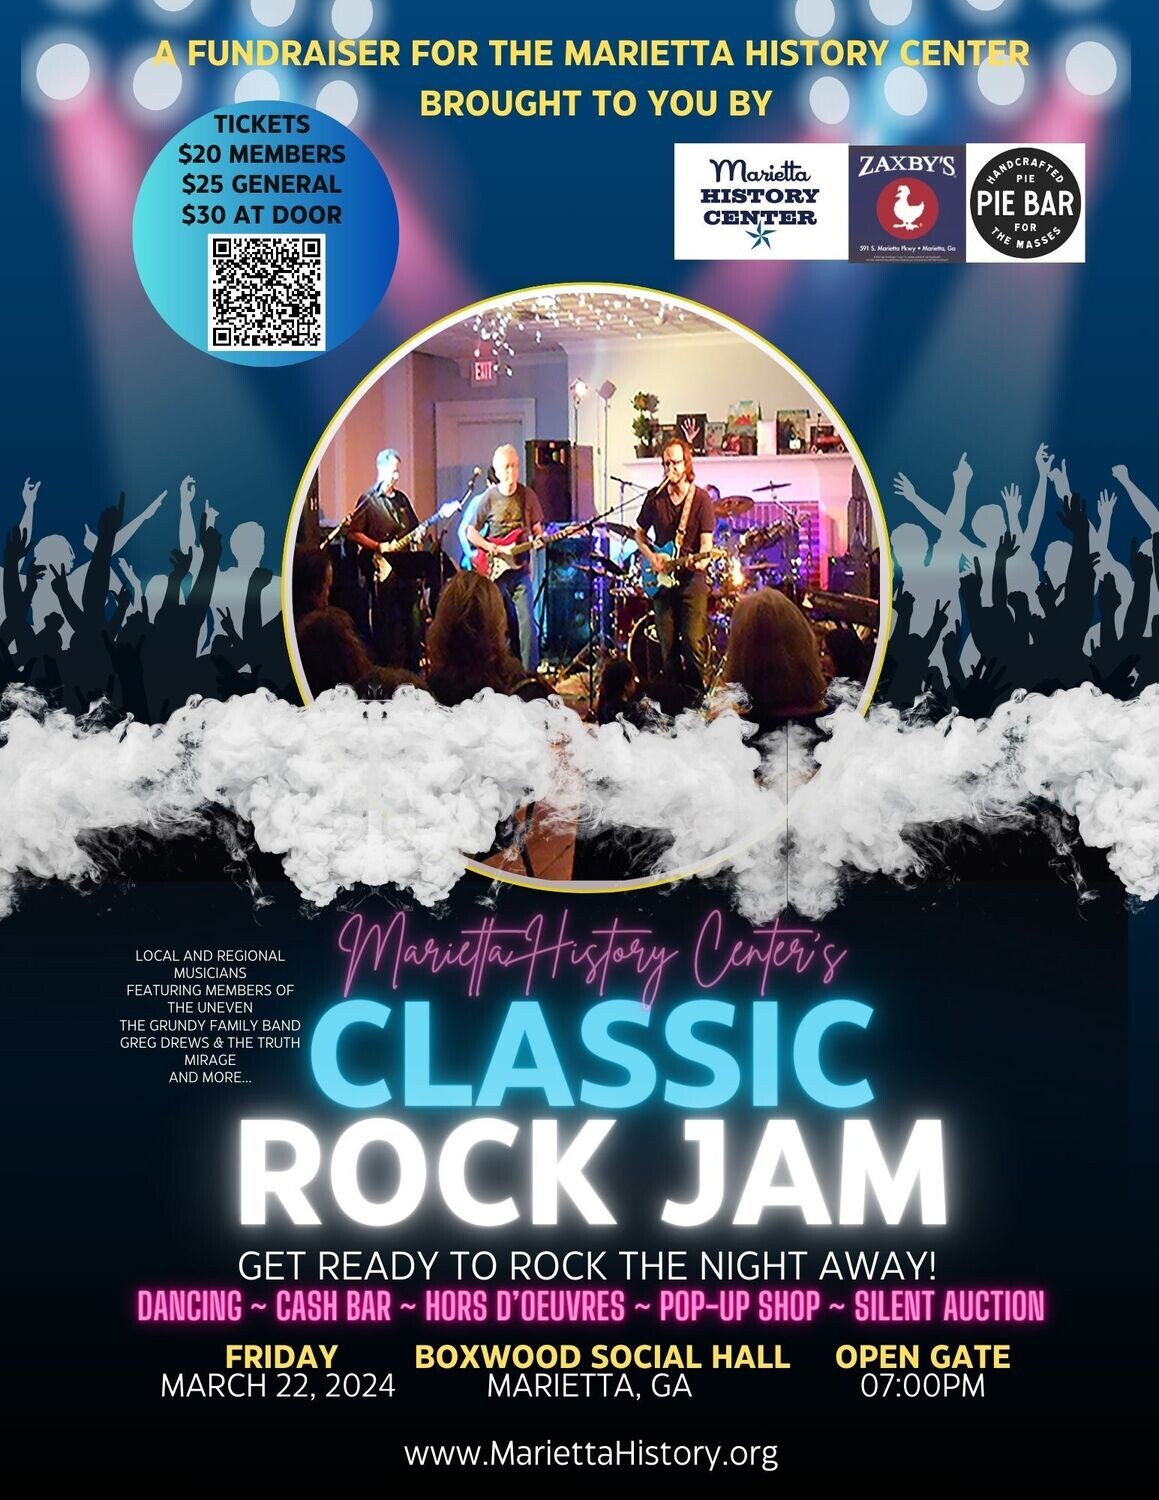 Classic Rock Jam Fundraising Event